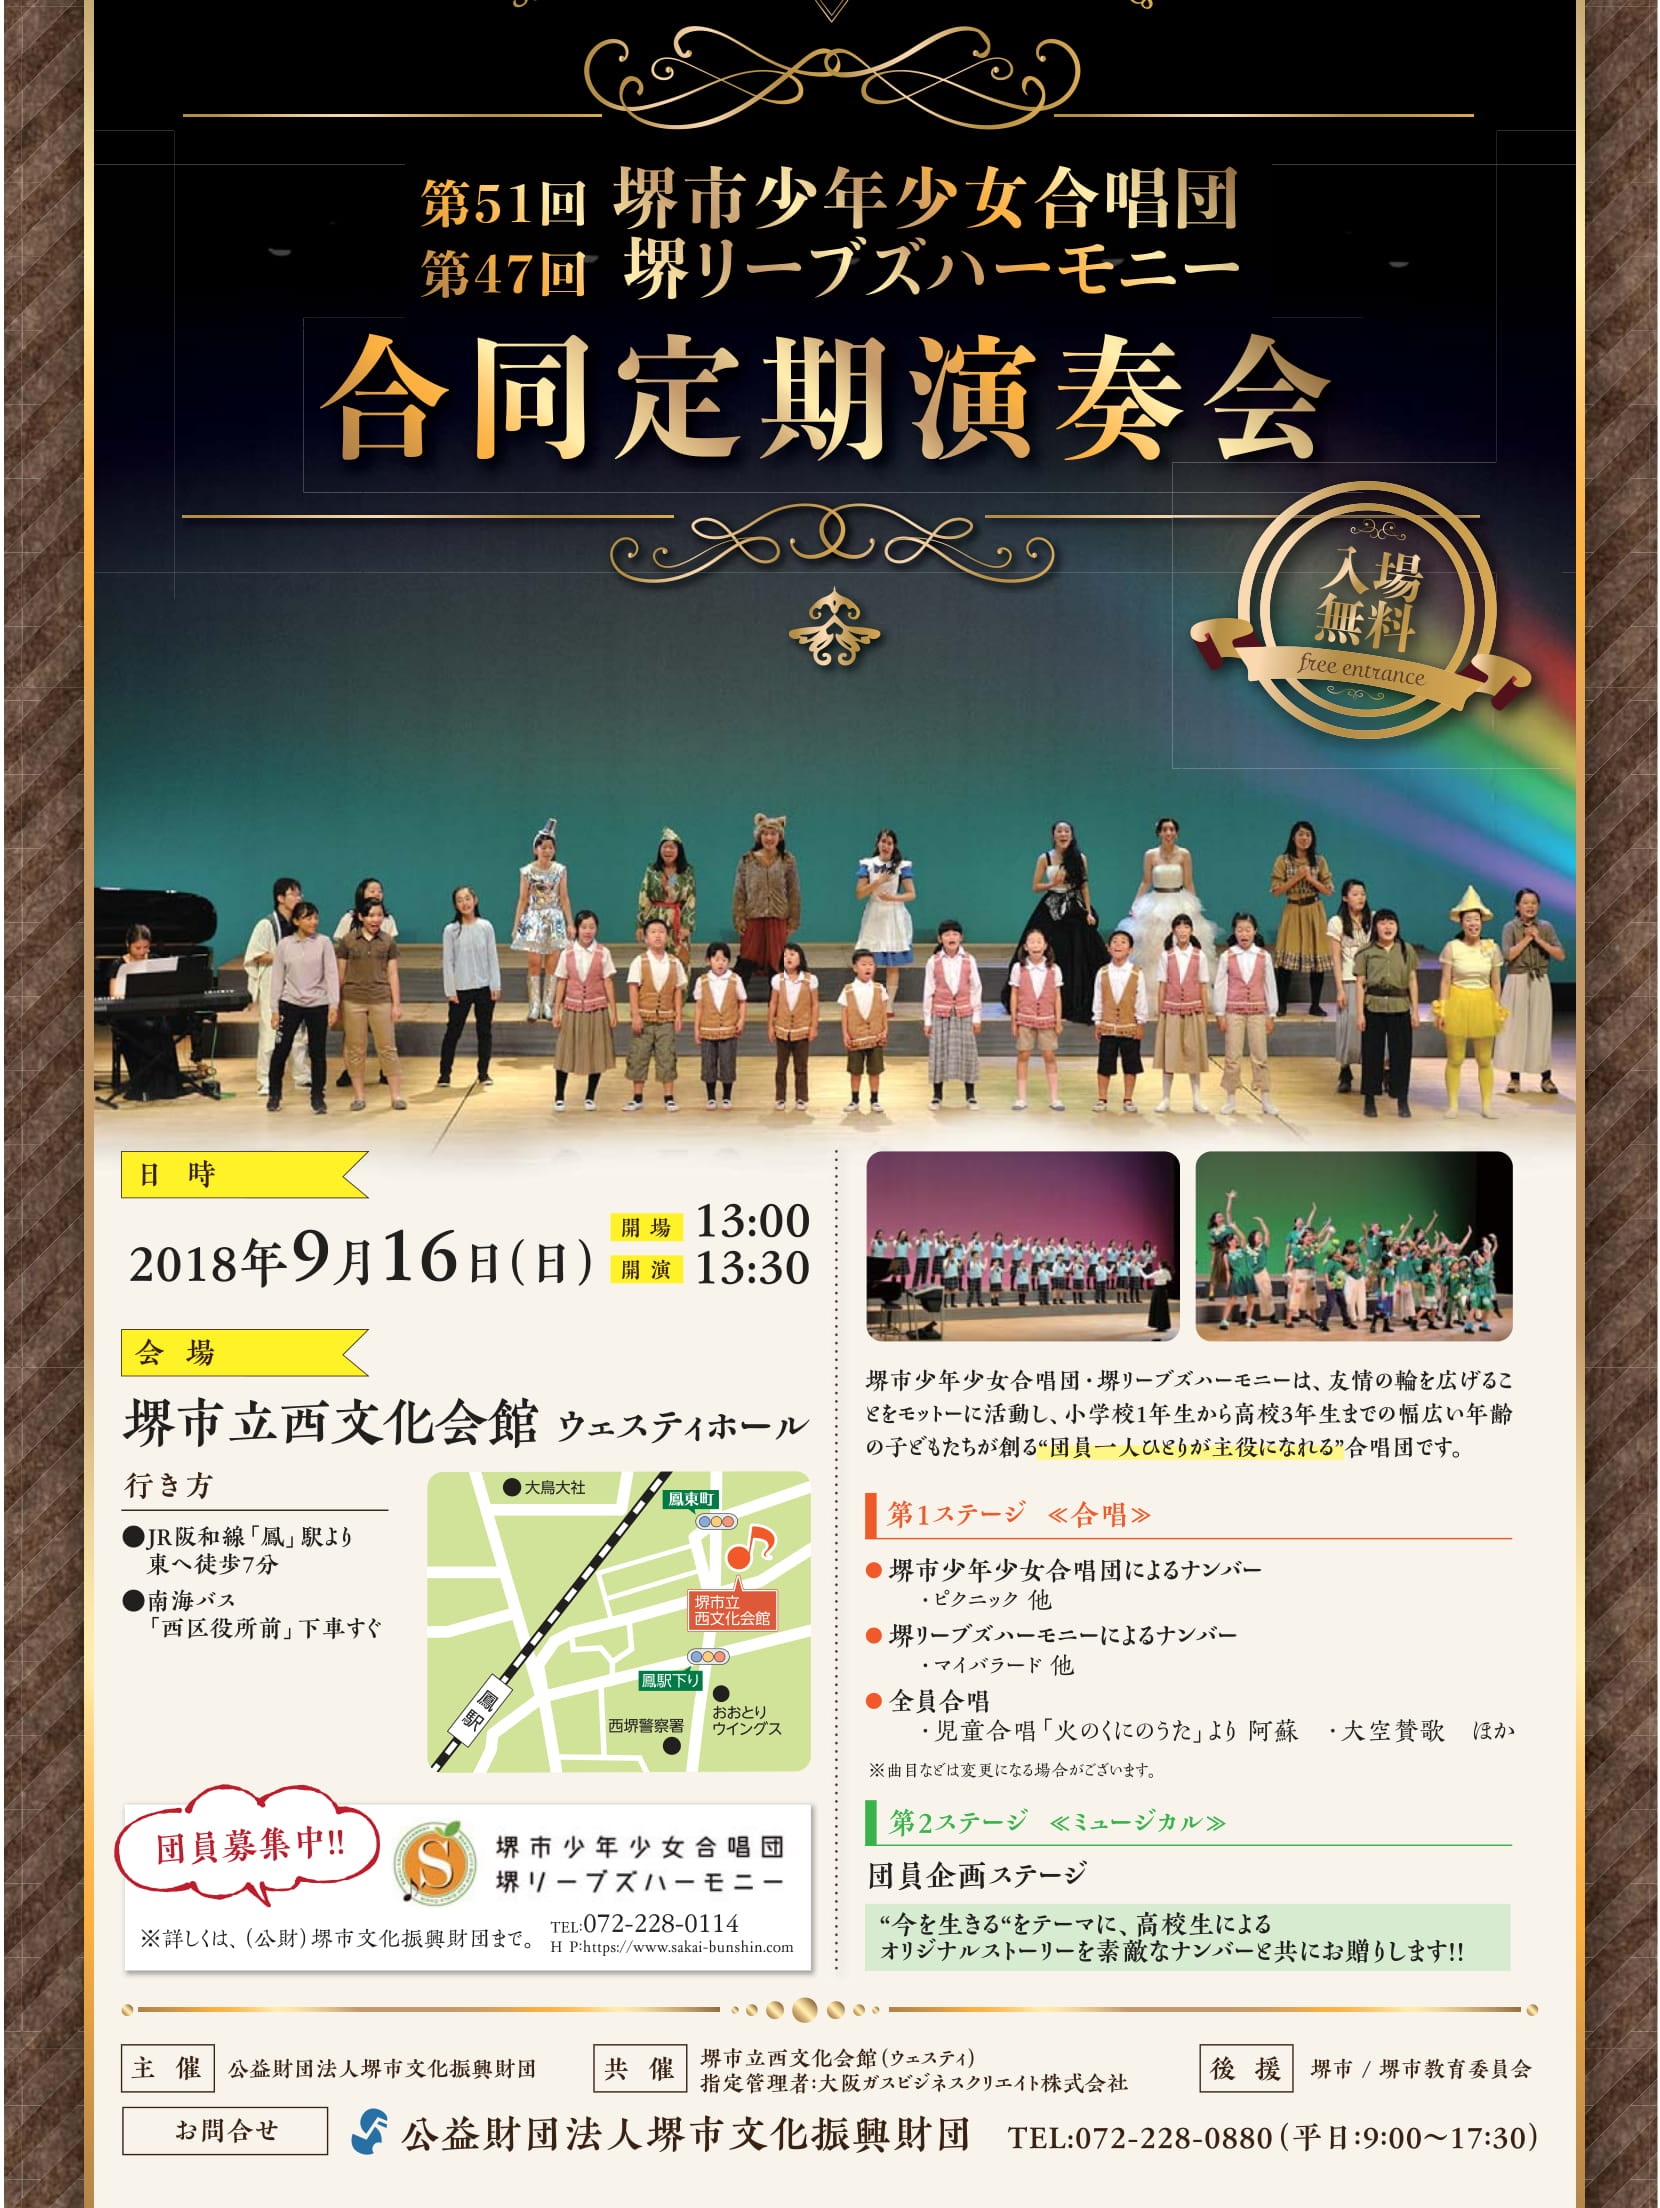 第50回 堺市少年少女合唱団・第46回 堺リーブズハーモニー
合同定期演奏会のチラシです